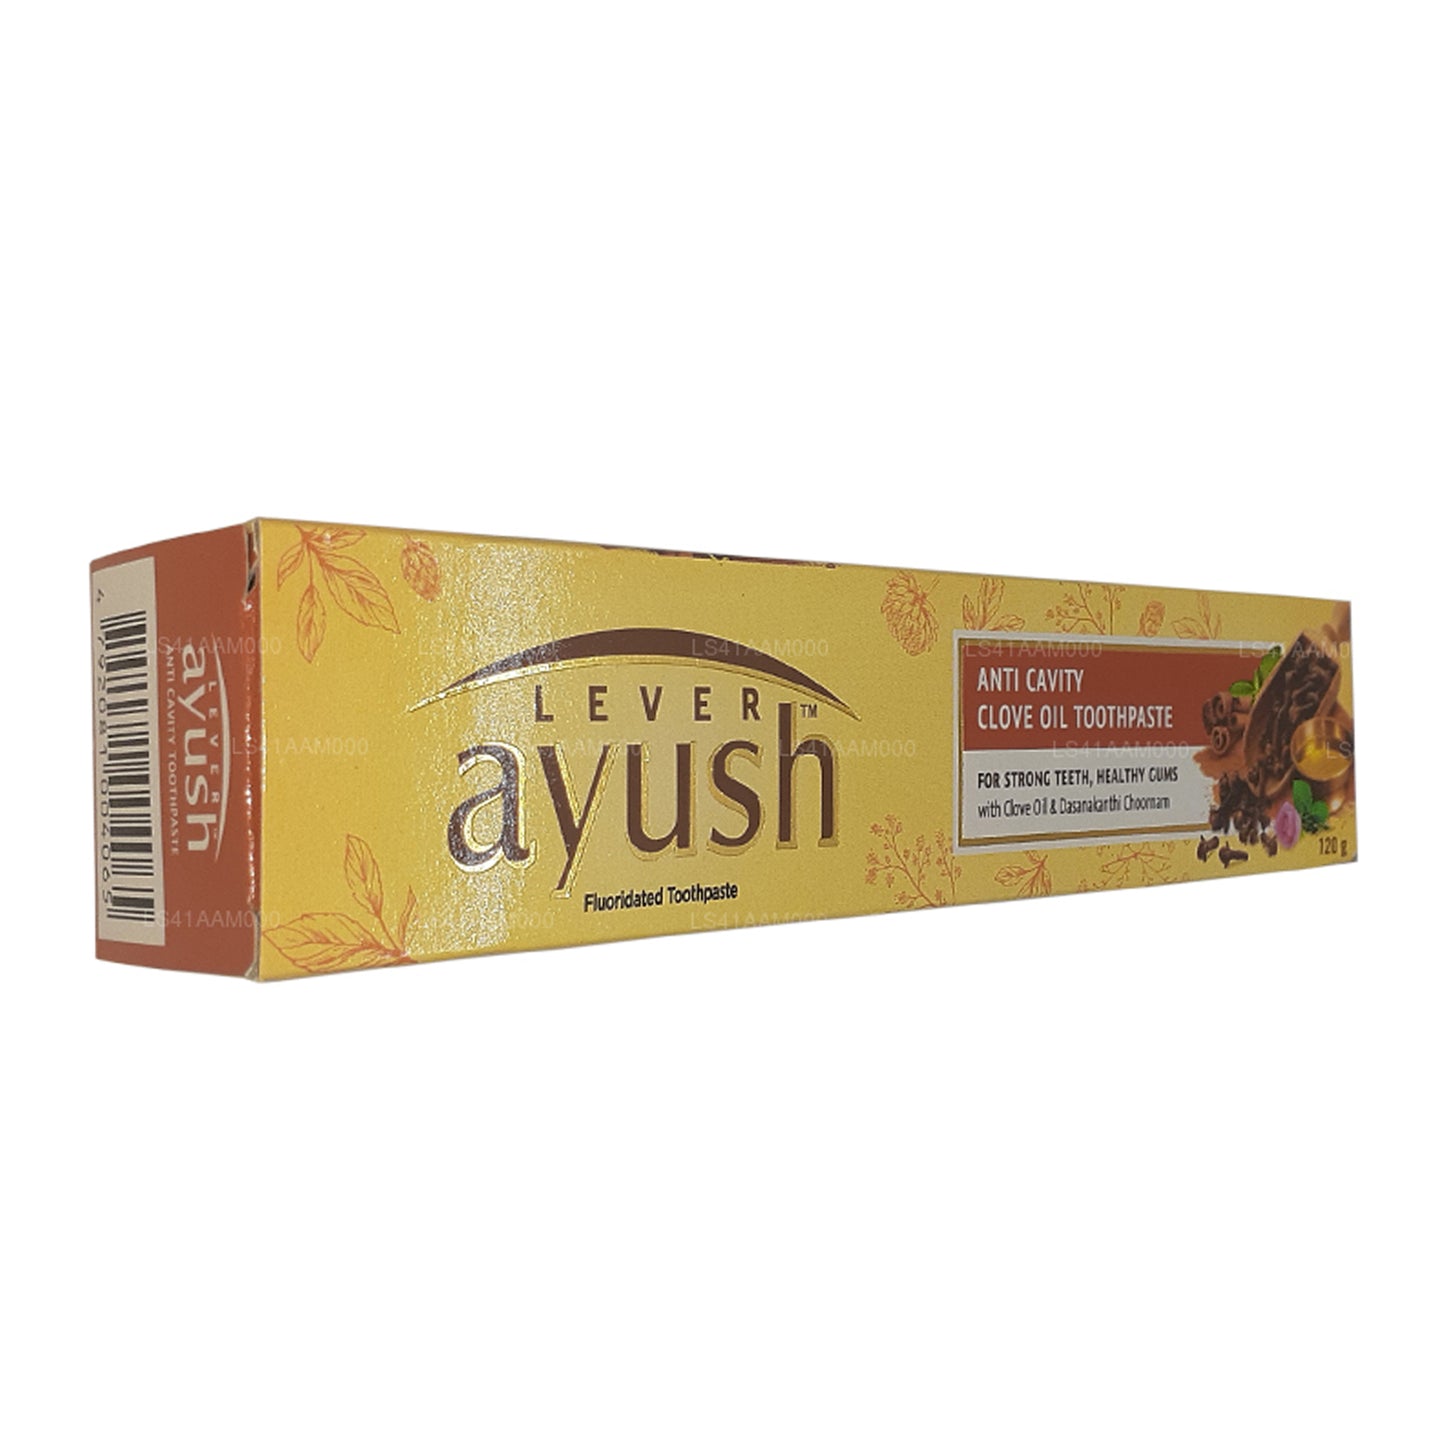 Tandpasta met kruidnagelolie tegen caviteit van Ayush